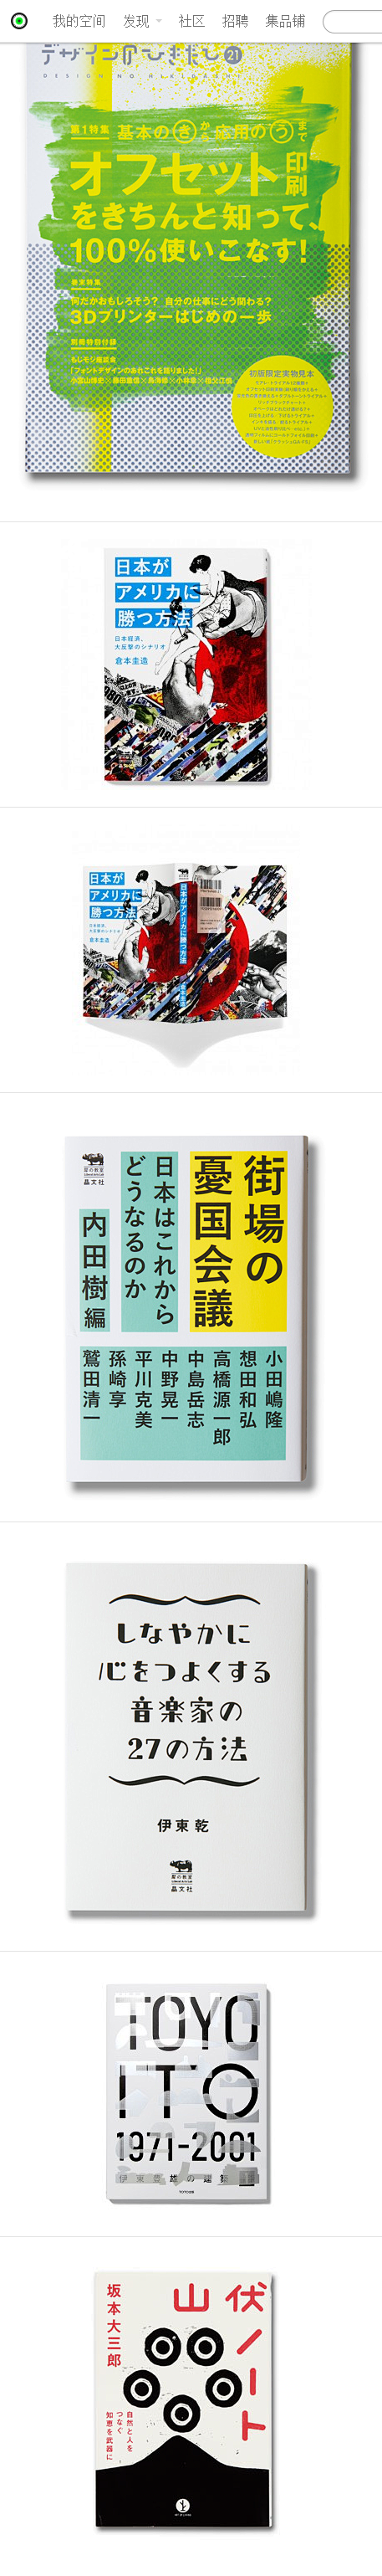 日本ASYL工作室书籍封面作品欣赏 设计...